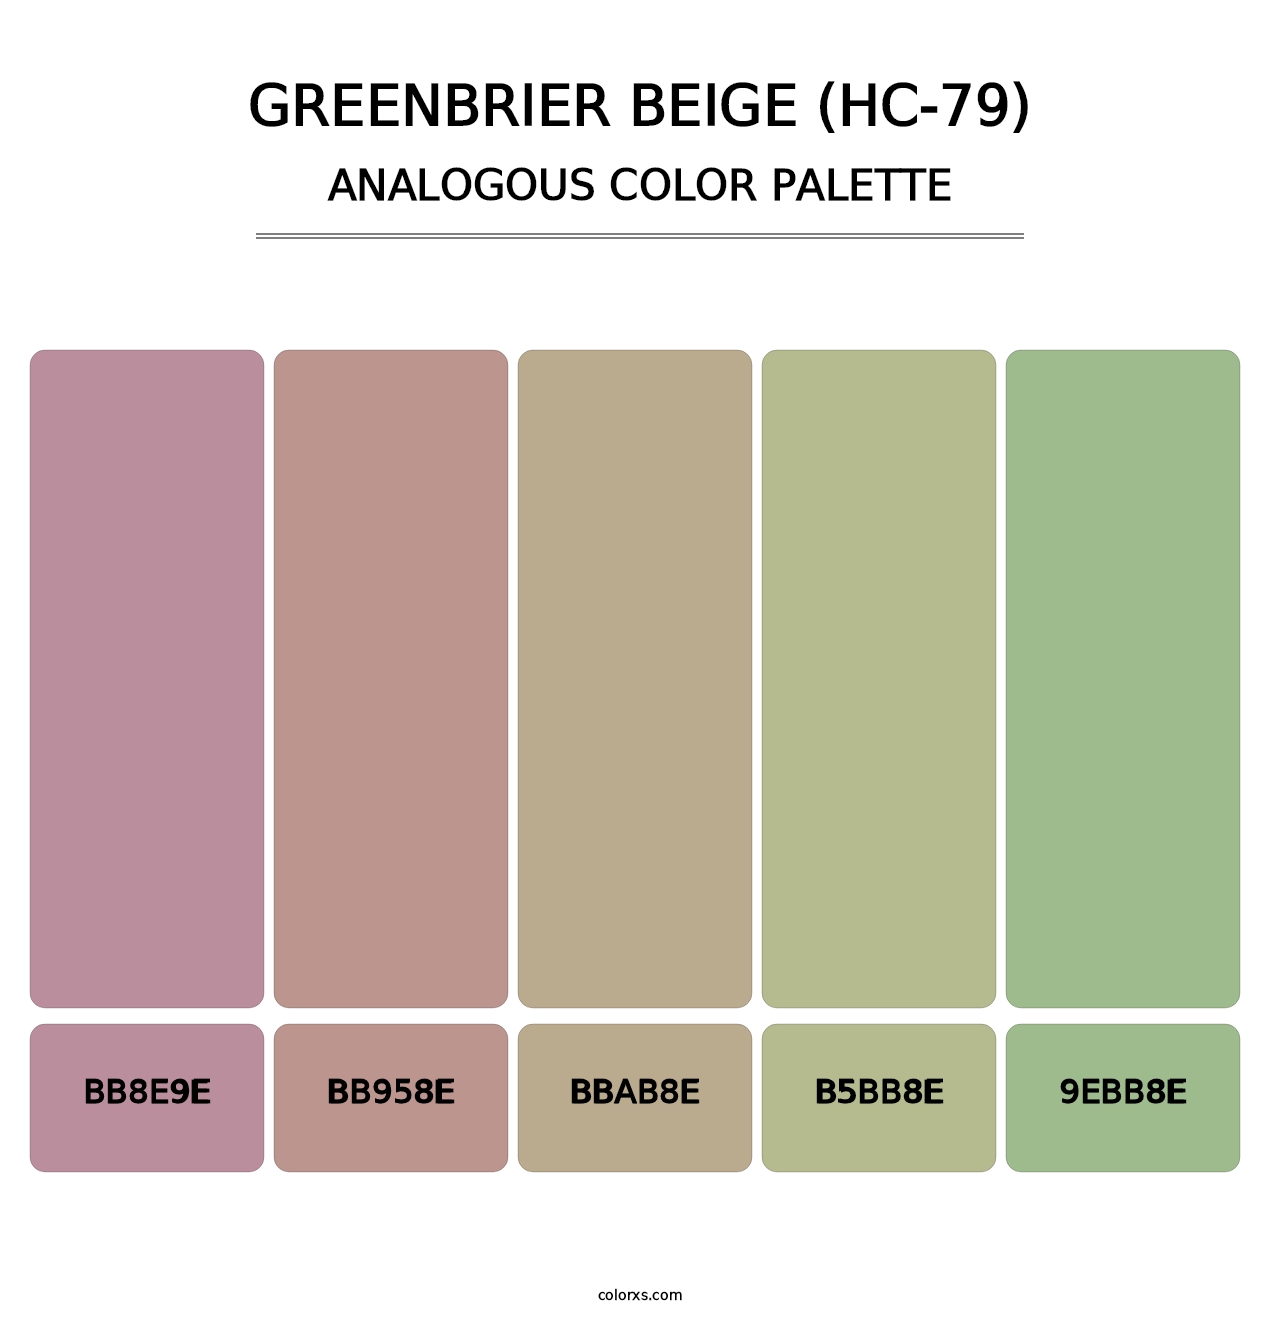 Greenbrier Beige (HC-79) - Analogous Color Palette